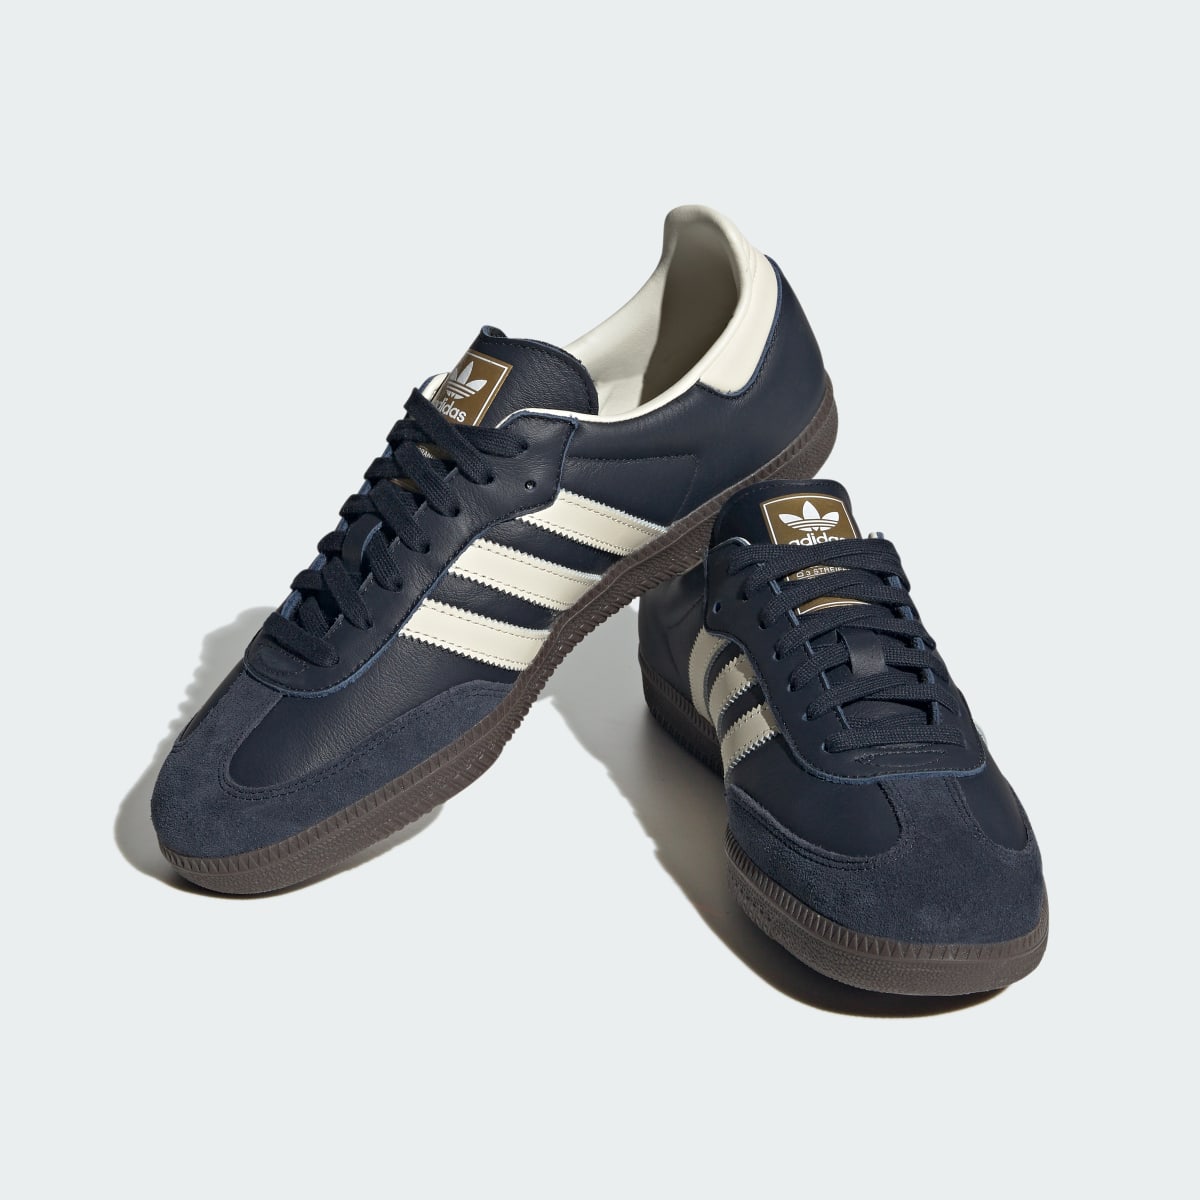 Adidas Samba OG Shoes. 9